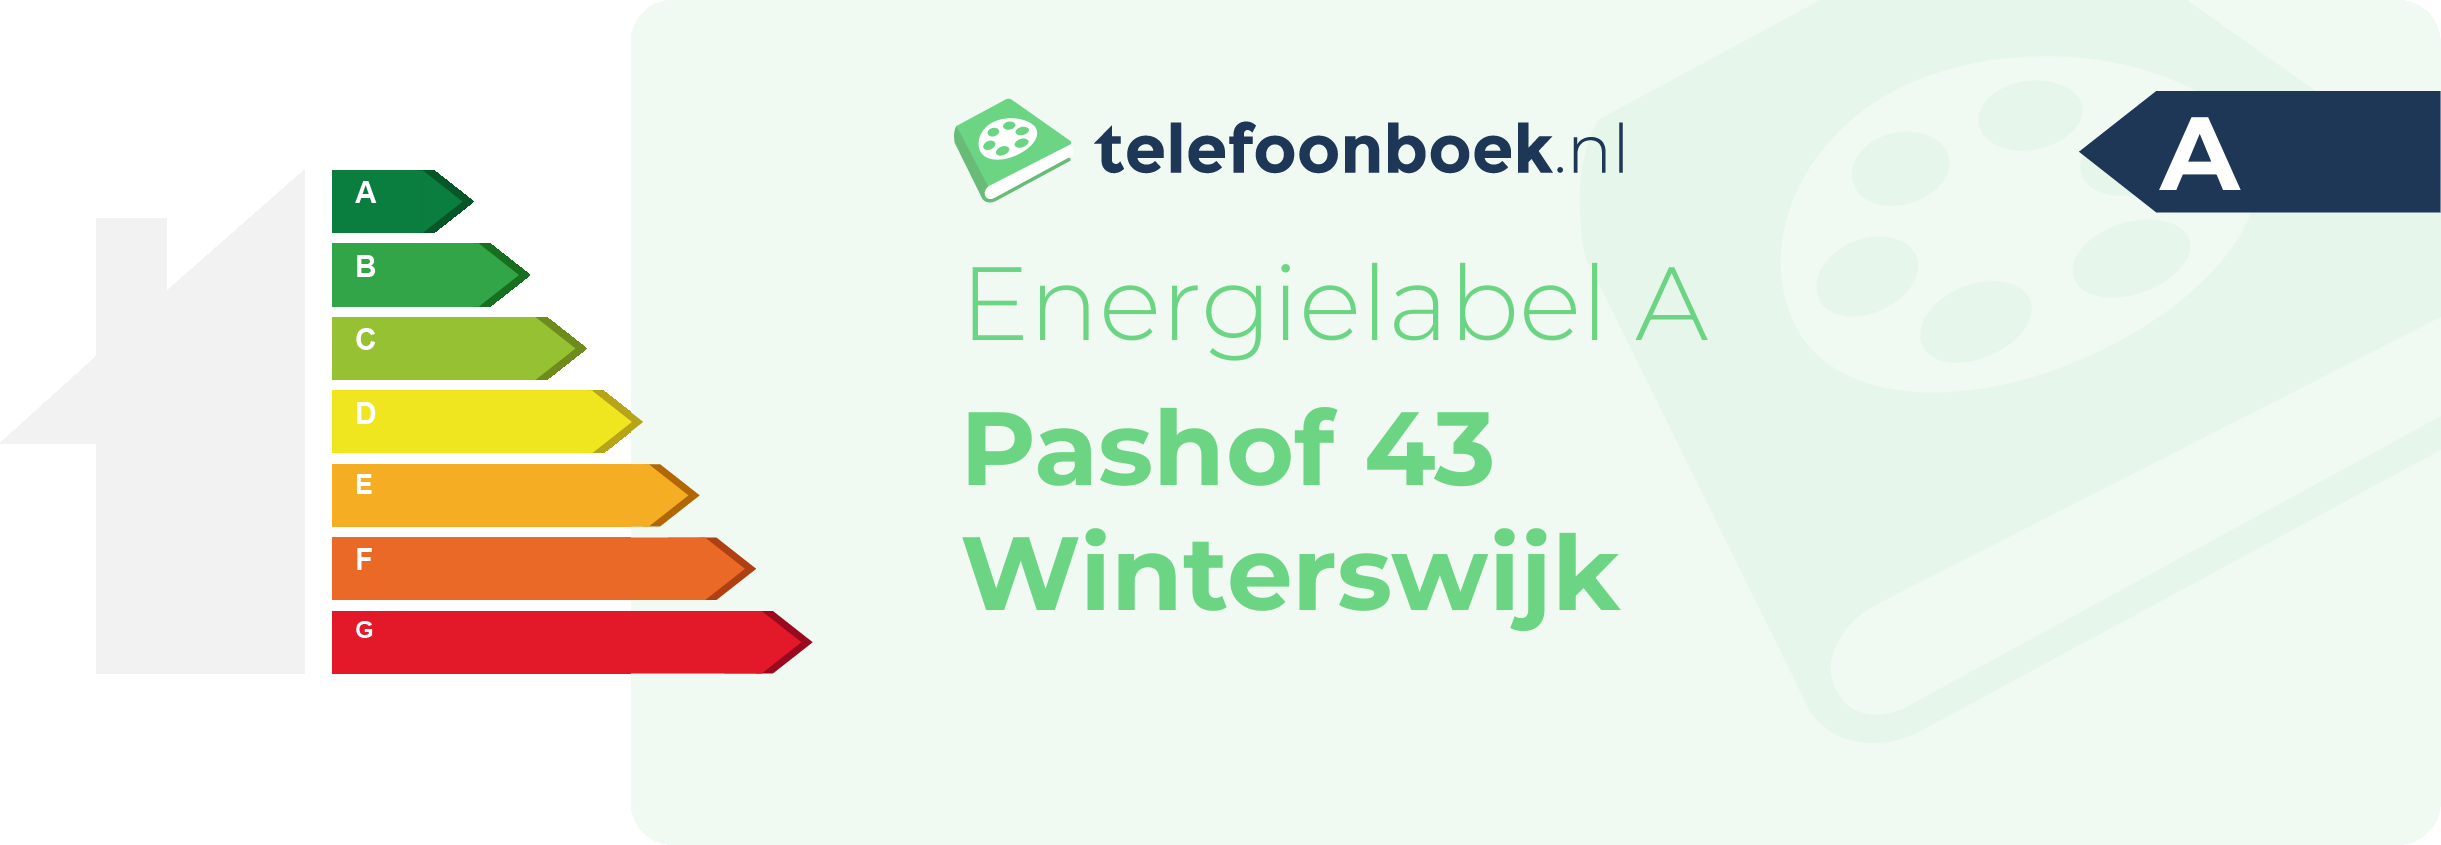 Energielabel Pashof 43 Winterswijk